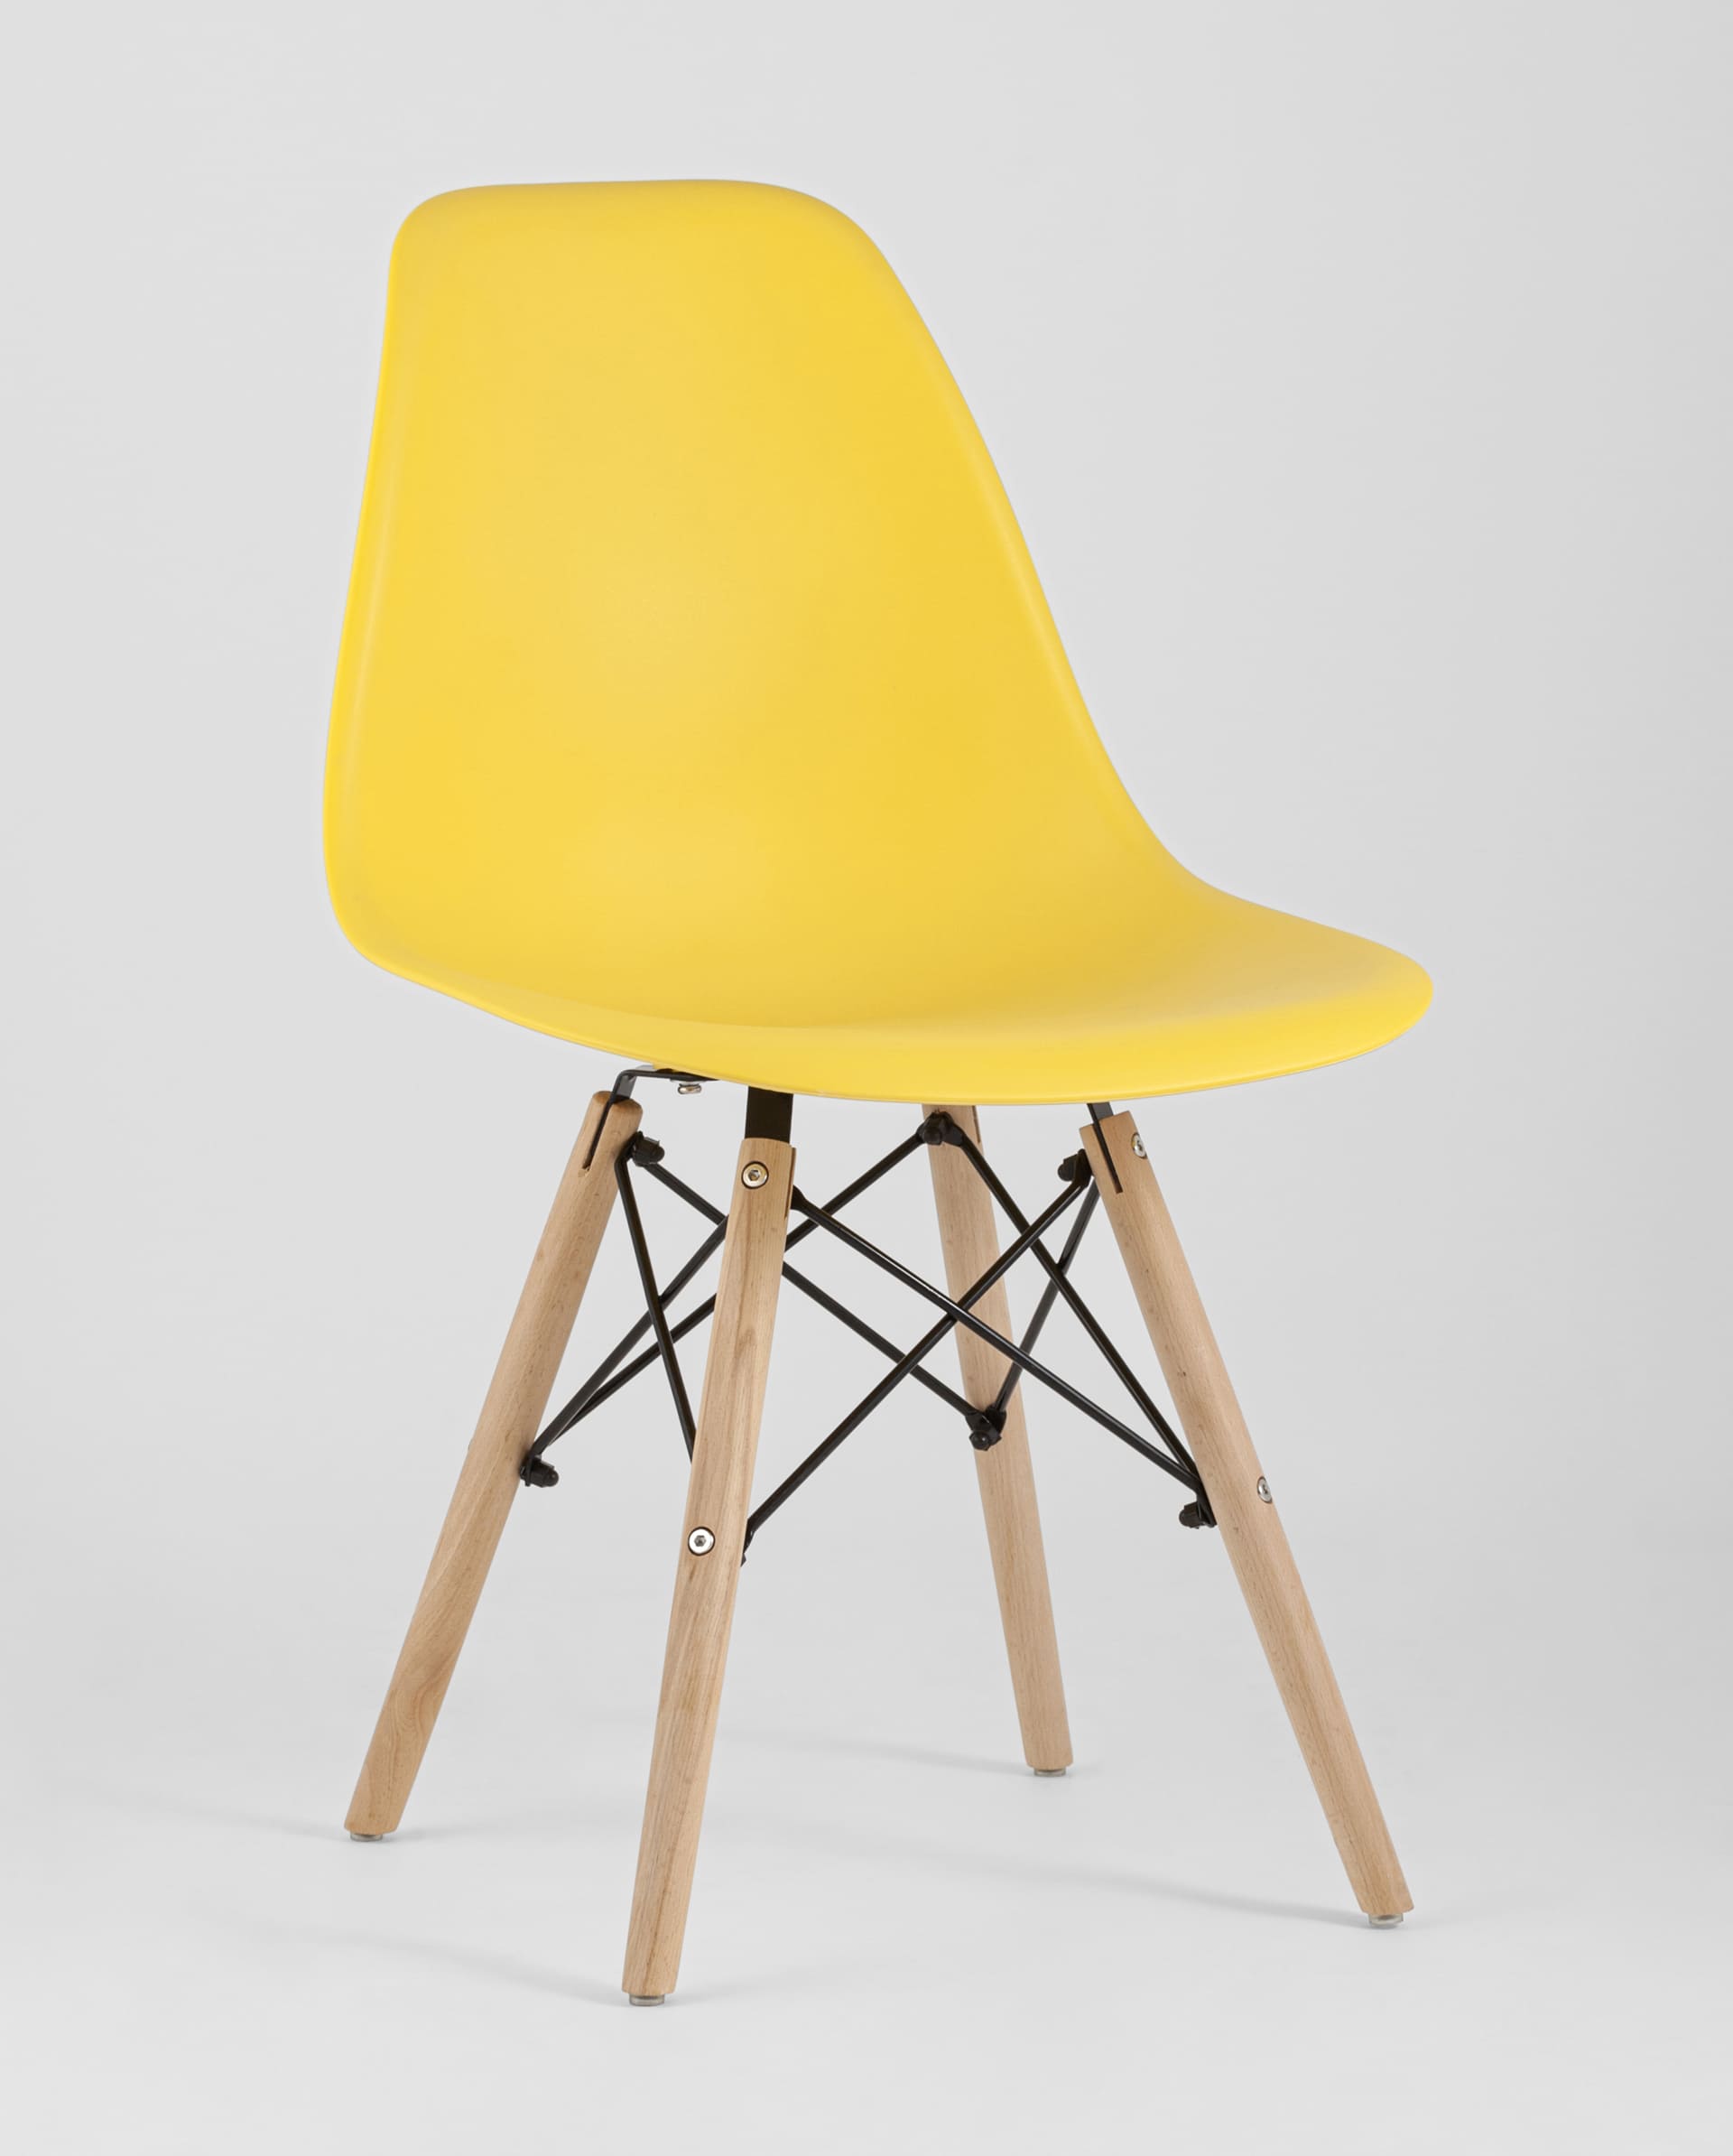 Желтый стул у детей